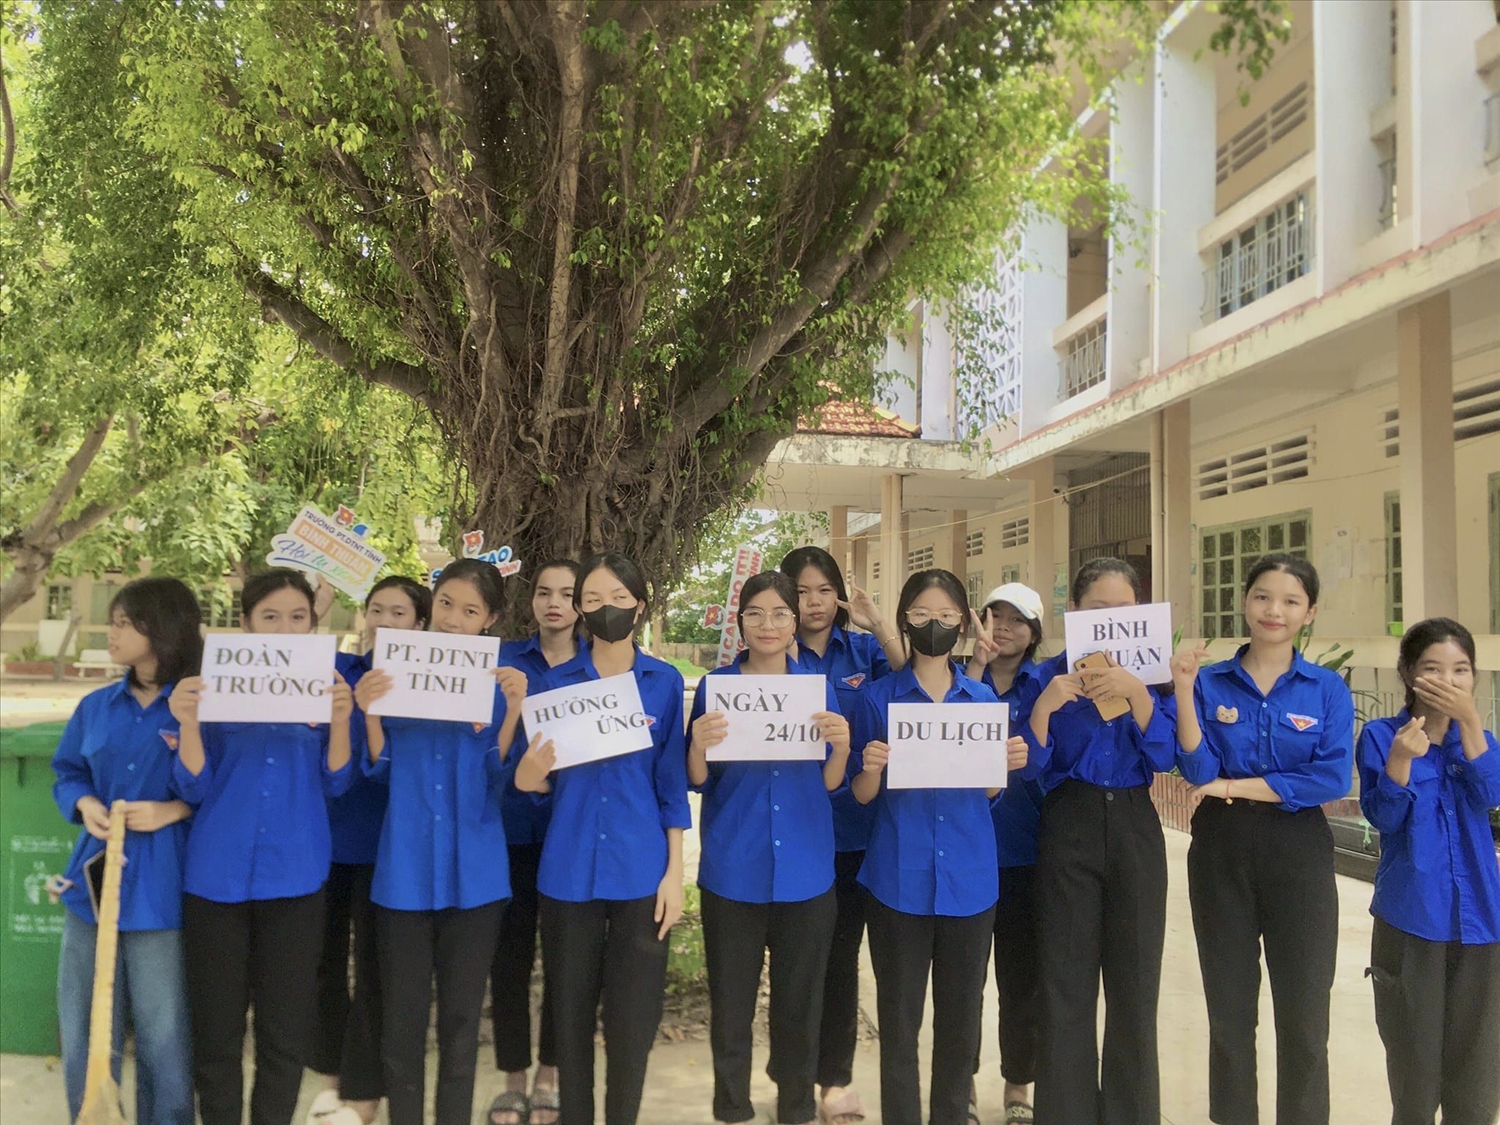 Các bạn đoàn viên, thanh niên Trường PTDTNT tỉnh Bình Thuận tổ chức các hoạt động hưởng ứng Ngày Du lịch Bình Thuận (24/10)